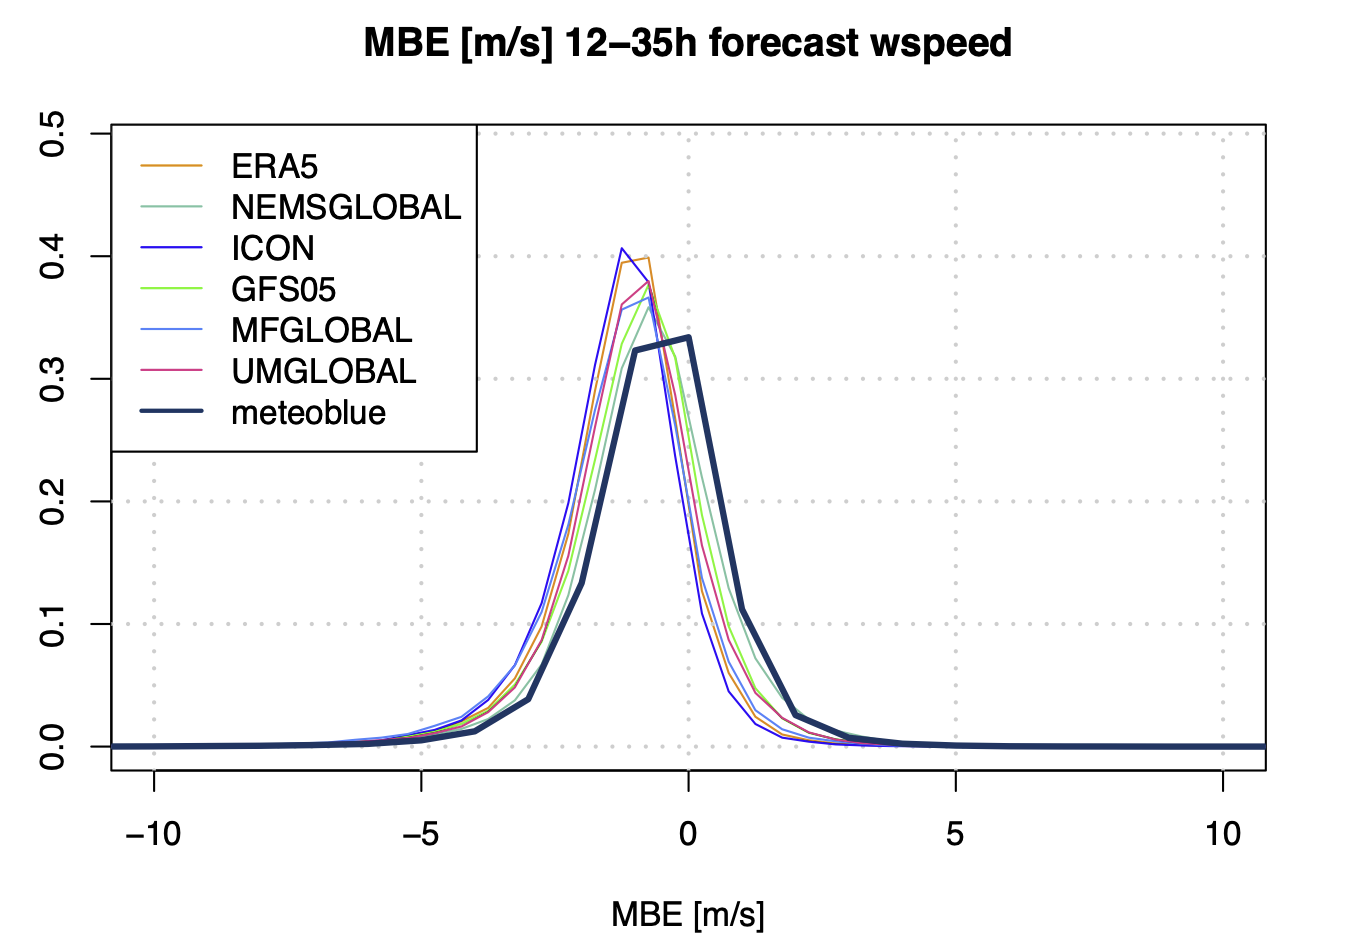 Diagramme de densité du MBE de différents modèles de prévision et du modèle de réanalyse ERA5 ainsi que du modèle de prévision meteoblue et
mesures horaires de plus de 450 stations mondiales de l'année 2021.